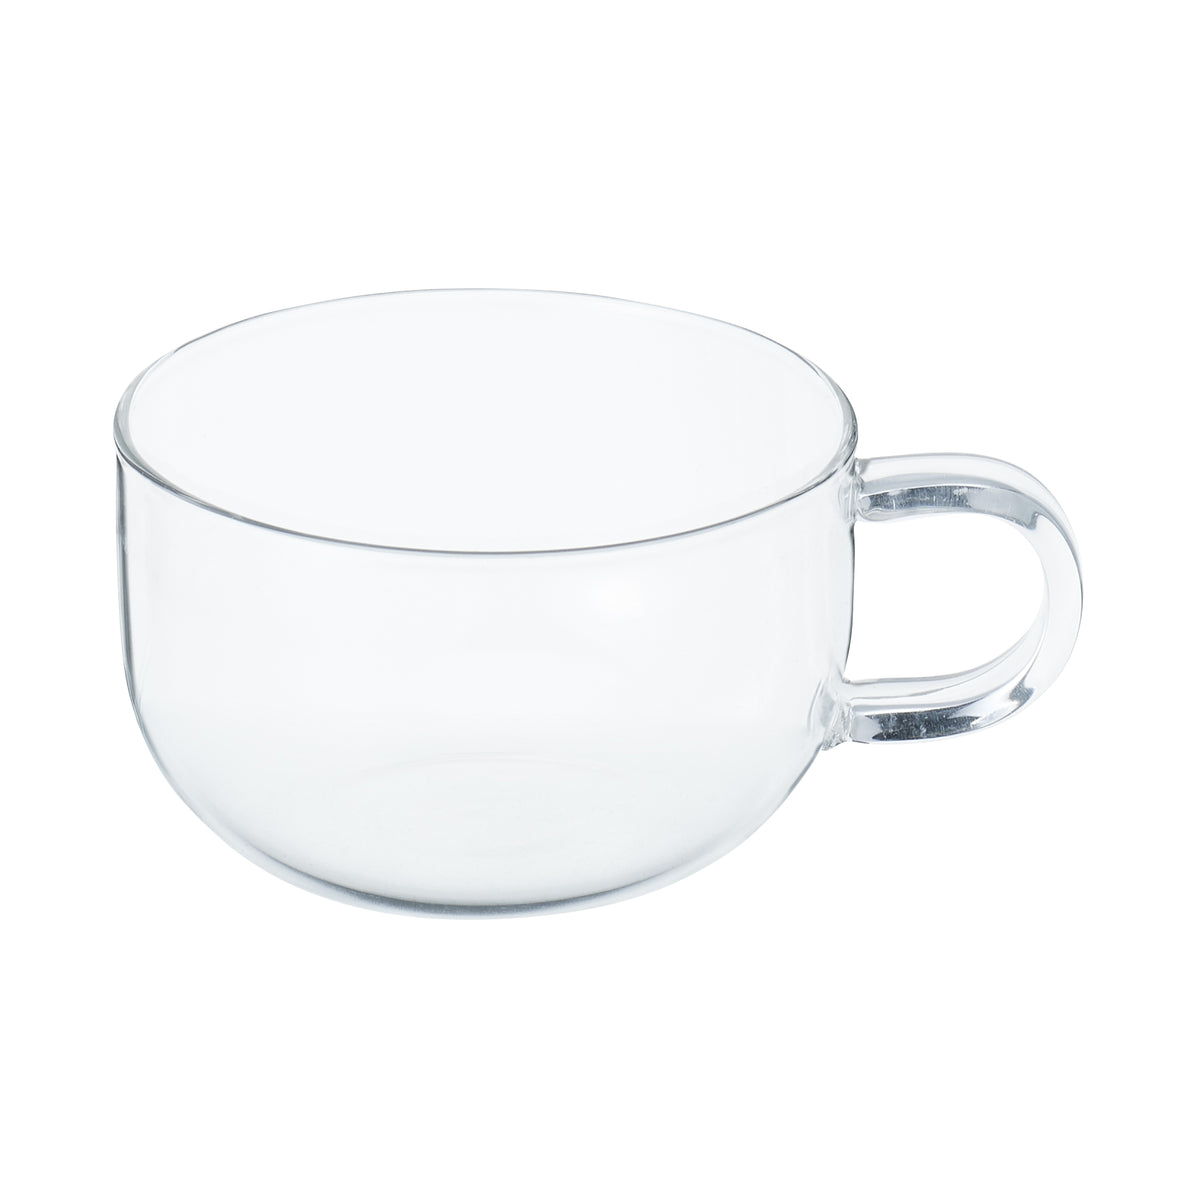 Onverenigbaar hoofdkussen nieuws Heat Resistant Glass Teacup | Glassware & Drinkware | MUJI USA